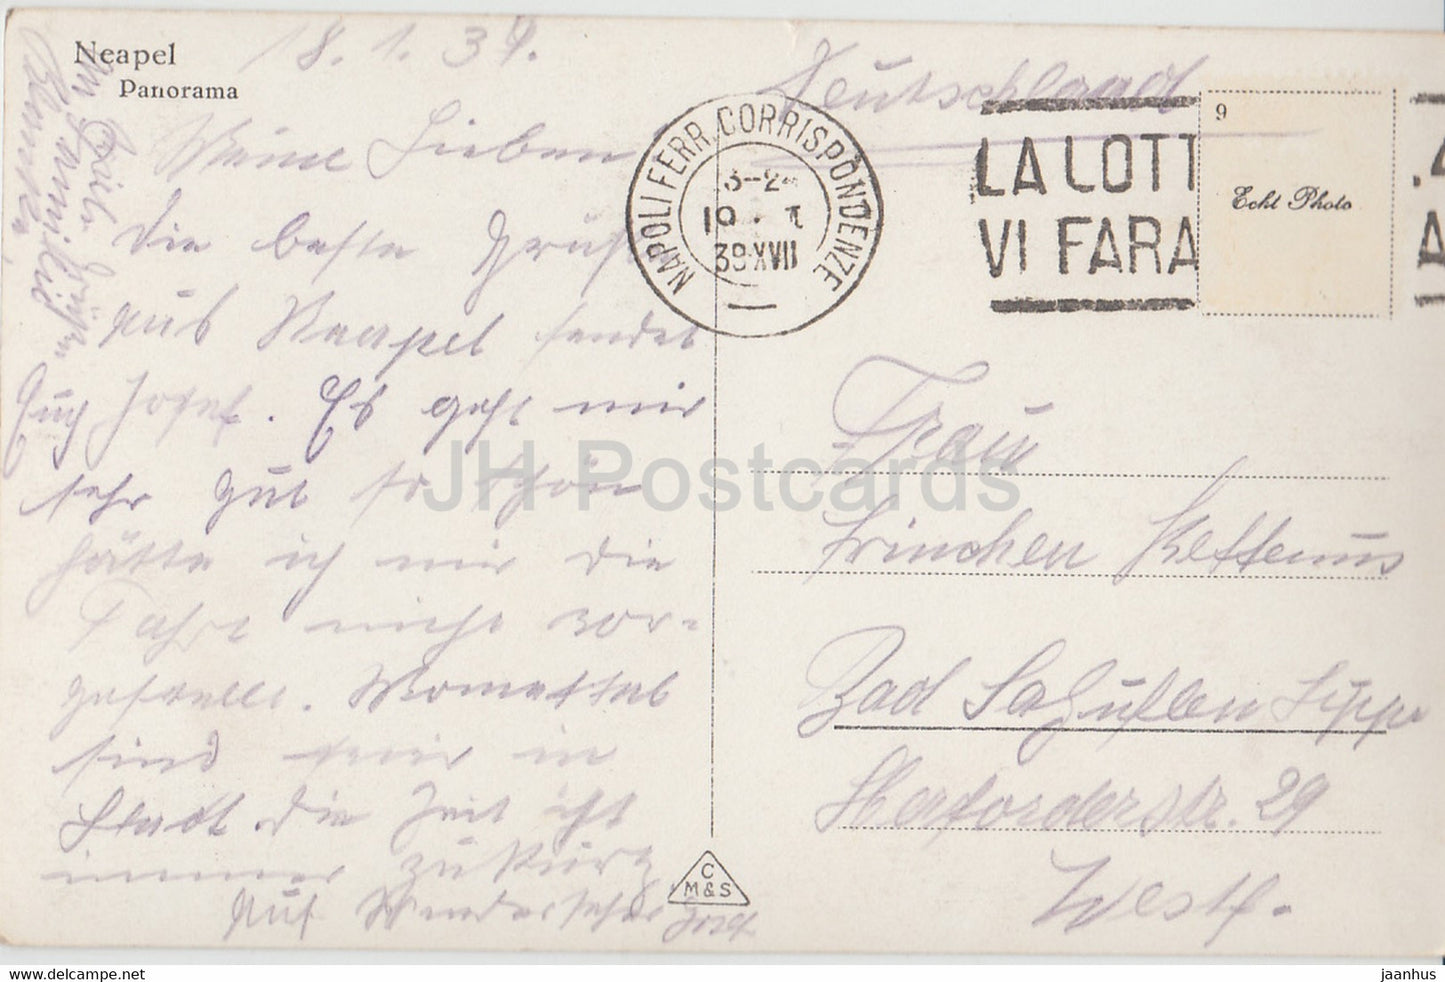 Naples - Naples - panorama - 621 a - carte postale ancienne - 1939 - Italie - utilisé